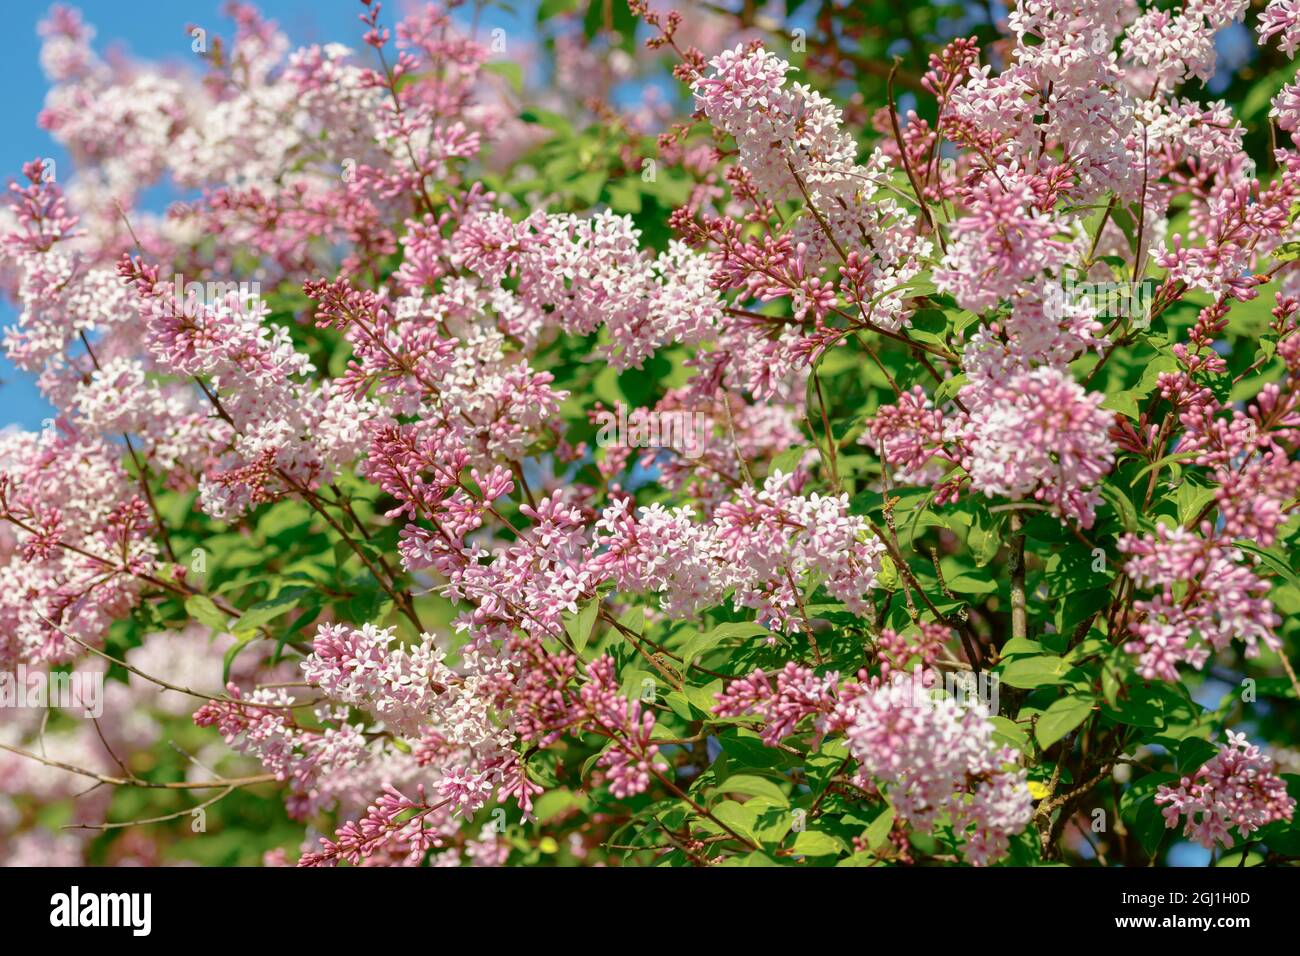 Schöner rosafarbener Fliederzweig mit Blumen und Knospen im Sommergarten Stockfoto